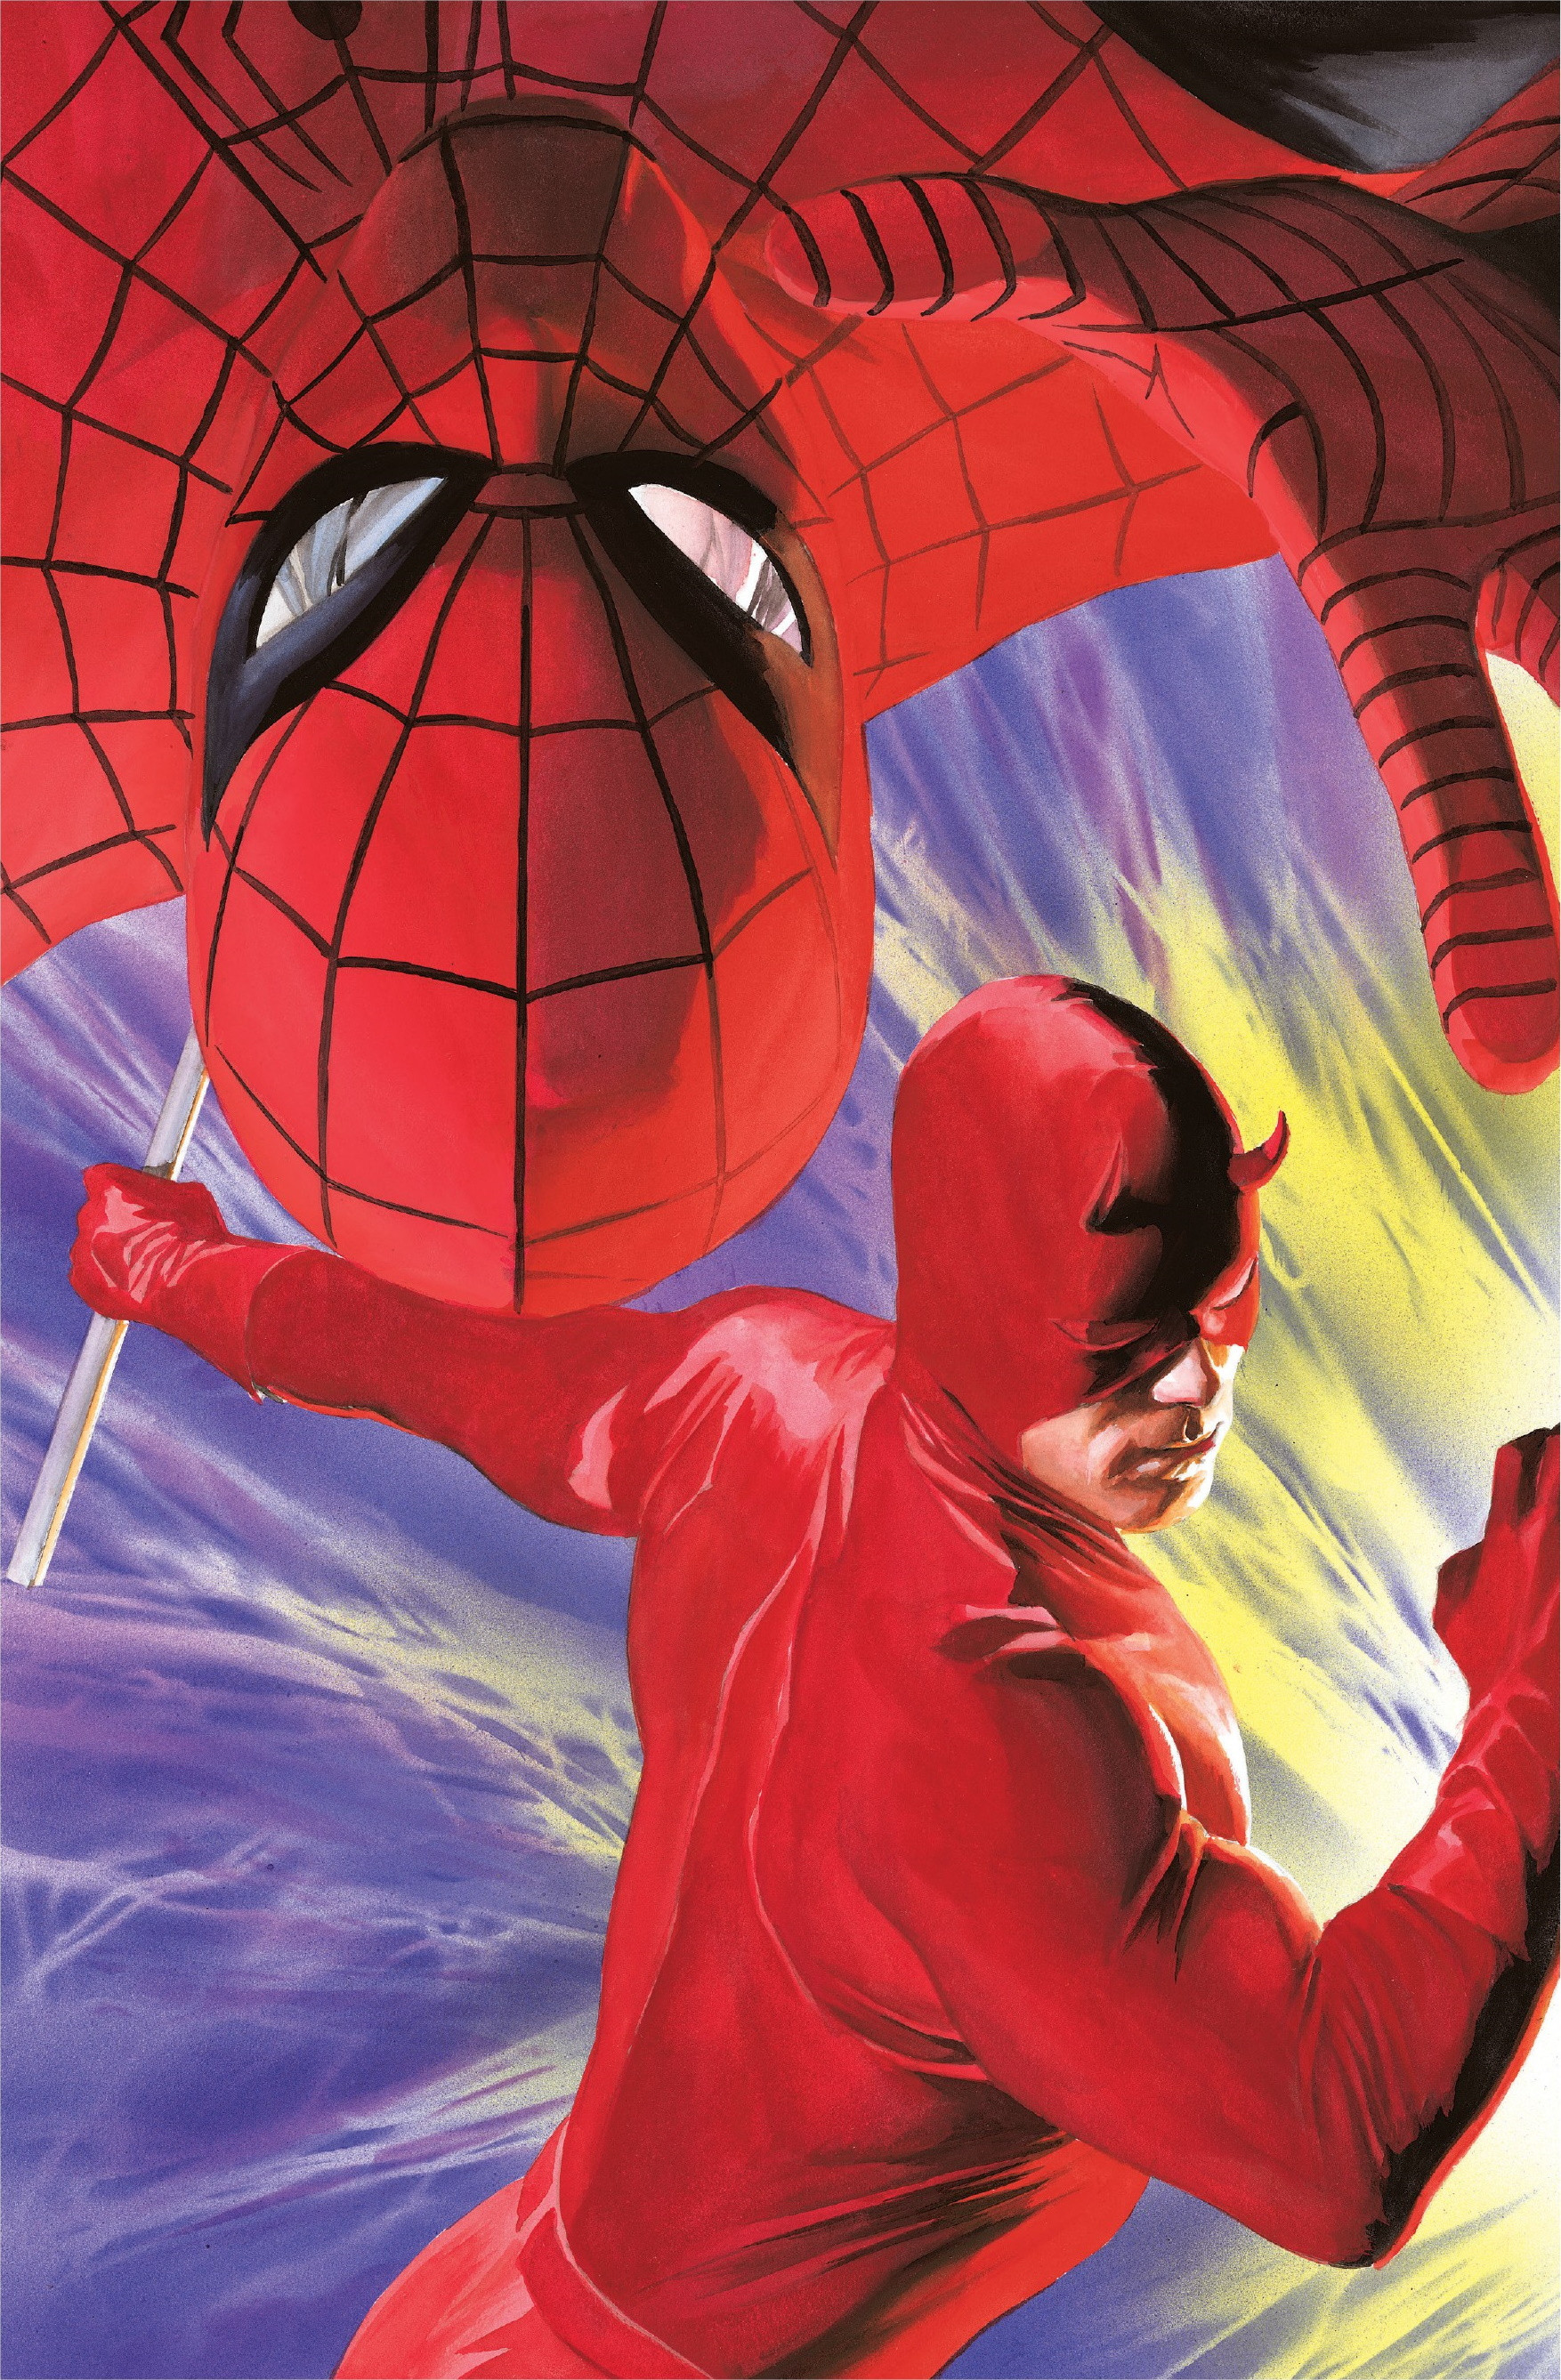 Daredevil/Spider-Man Vol 1 1 | Marvel Database | Fandom